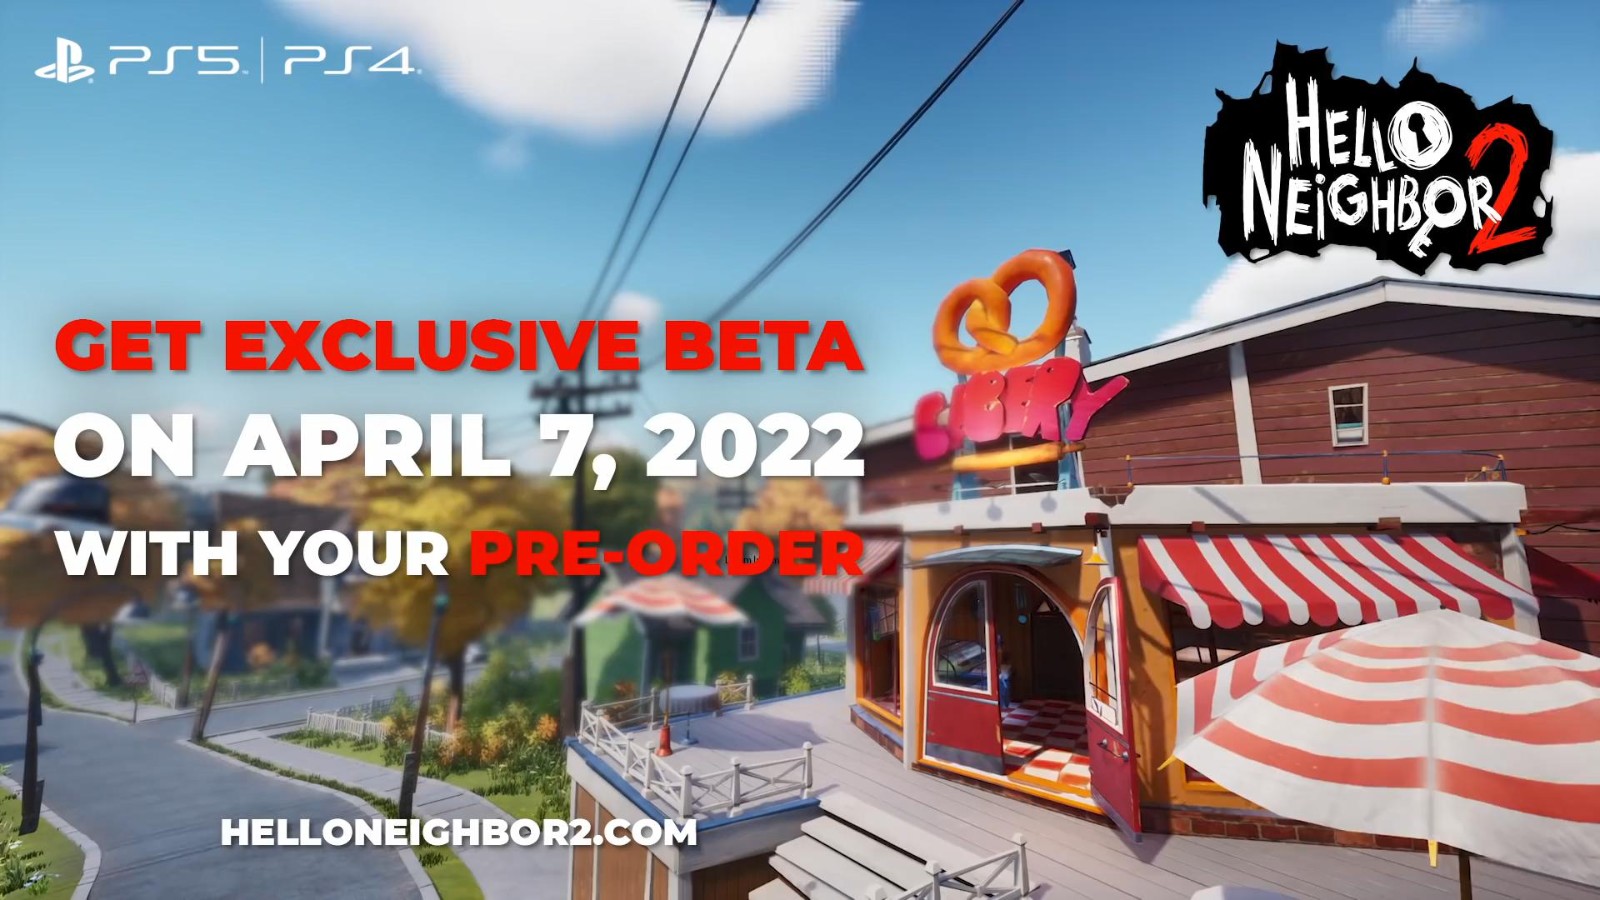 《你好邻居2》将登陆PS4和PS5 B测4月7日上线